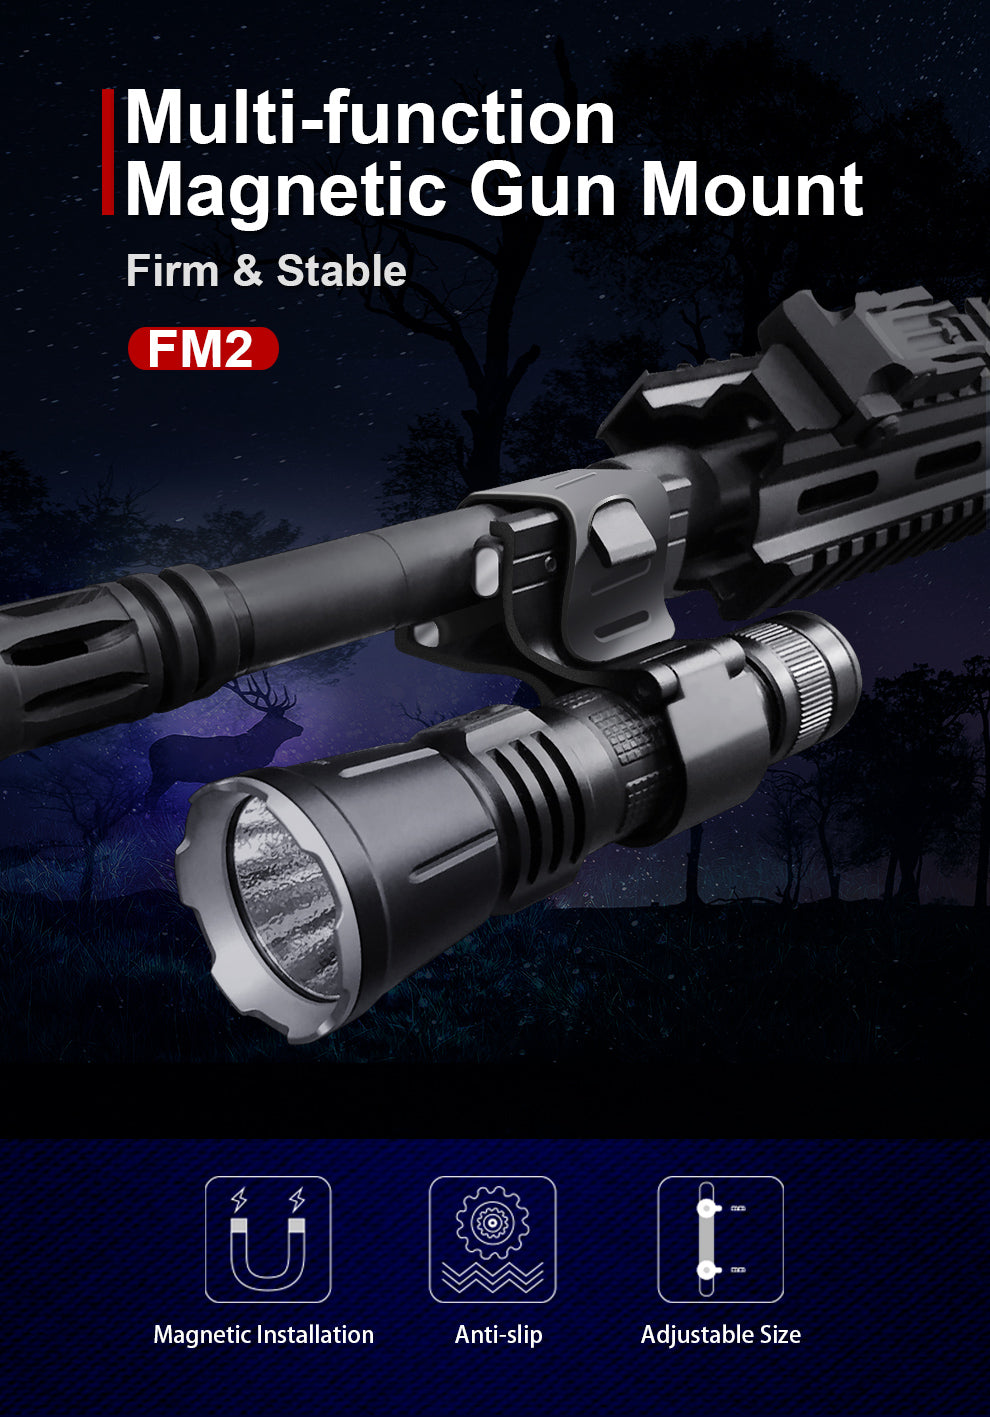 Waffenhalterung FM2 für alle Lampen mit Durchmesser von 23-27.5mm